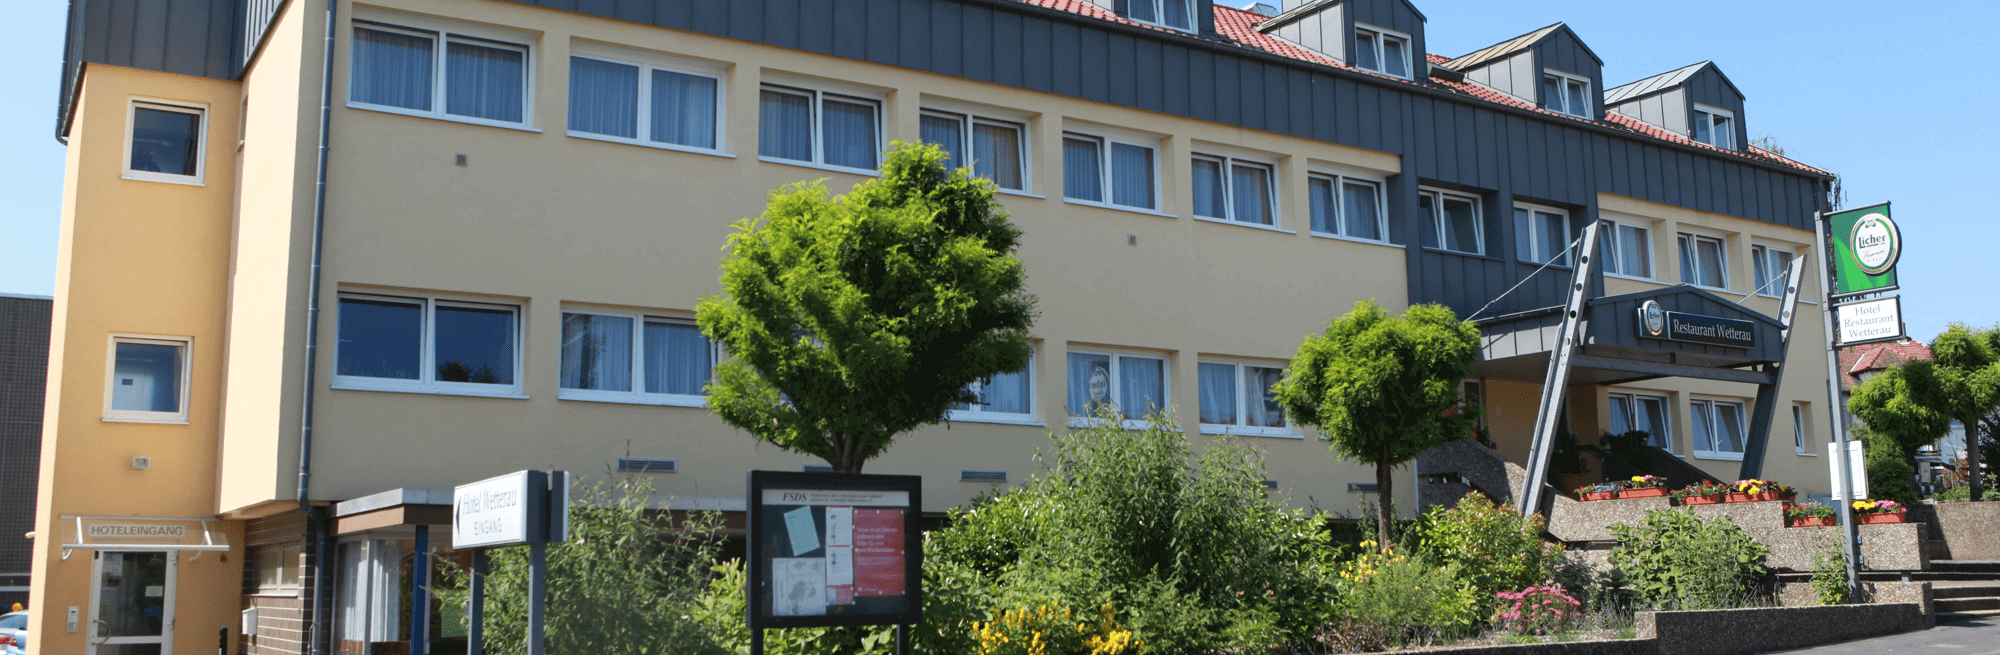 Hotel & Restaurant Wetterau in Wölfersheim bei Selters